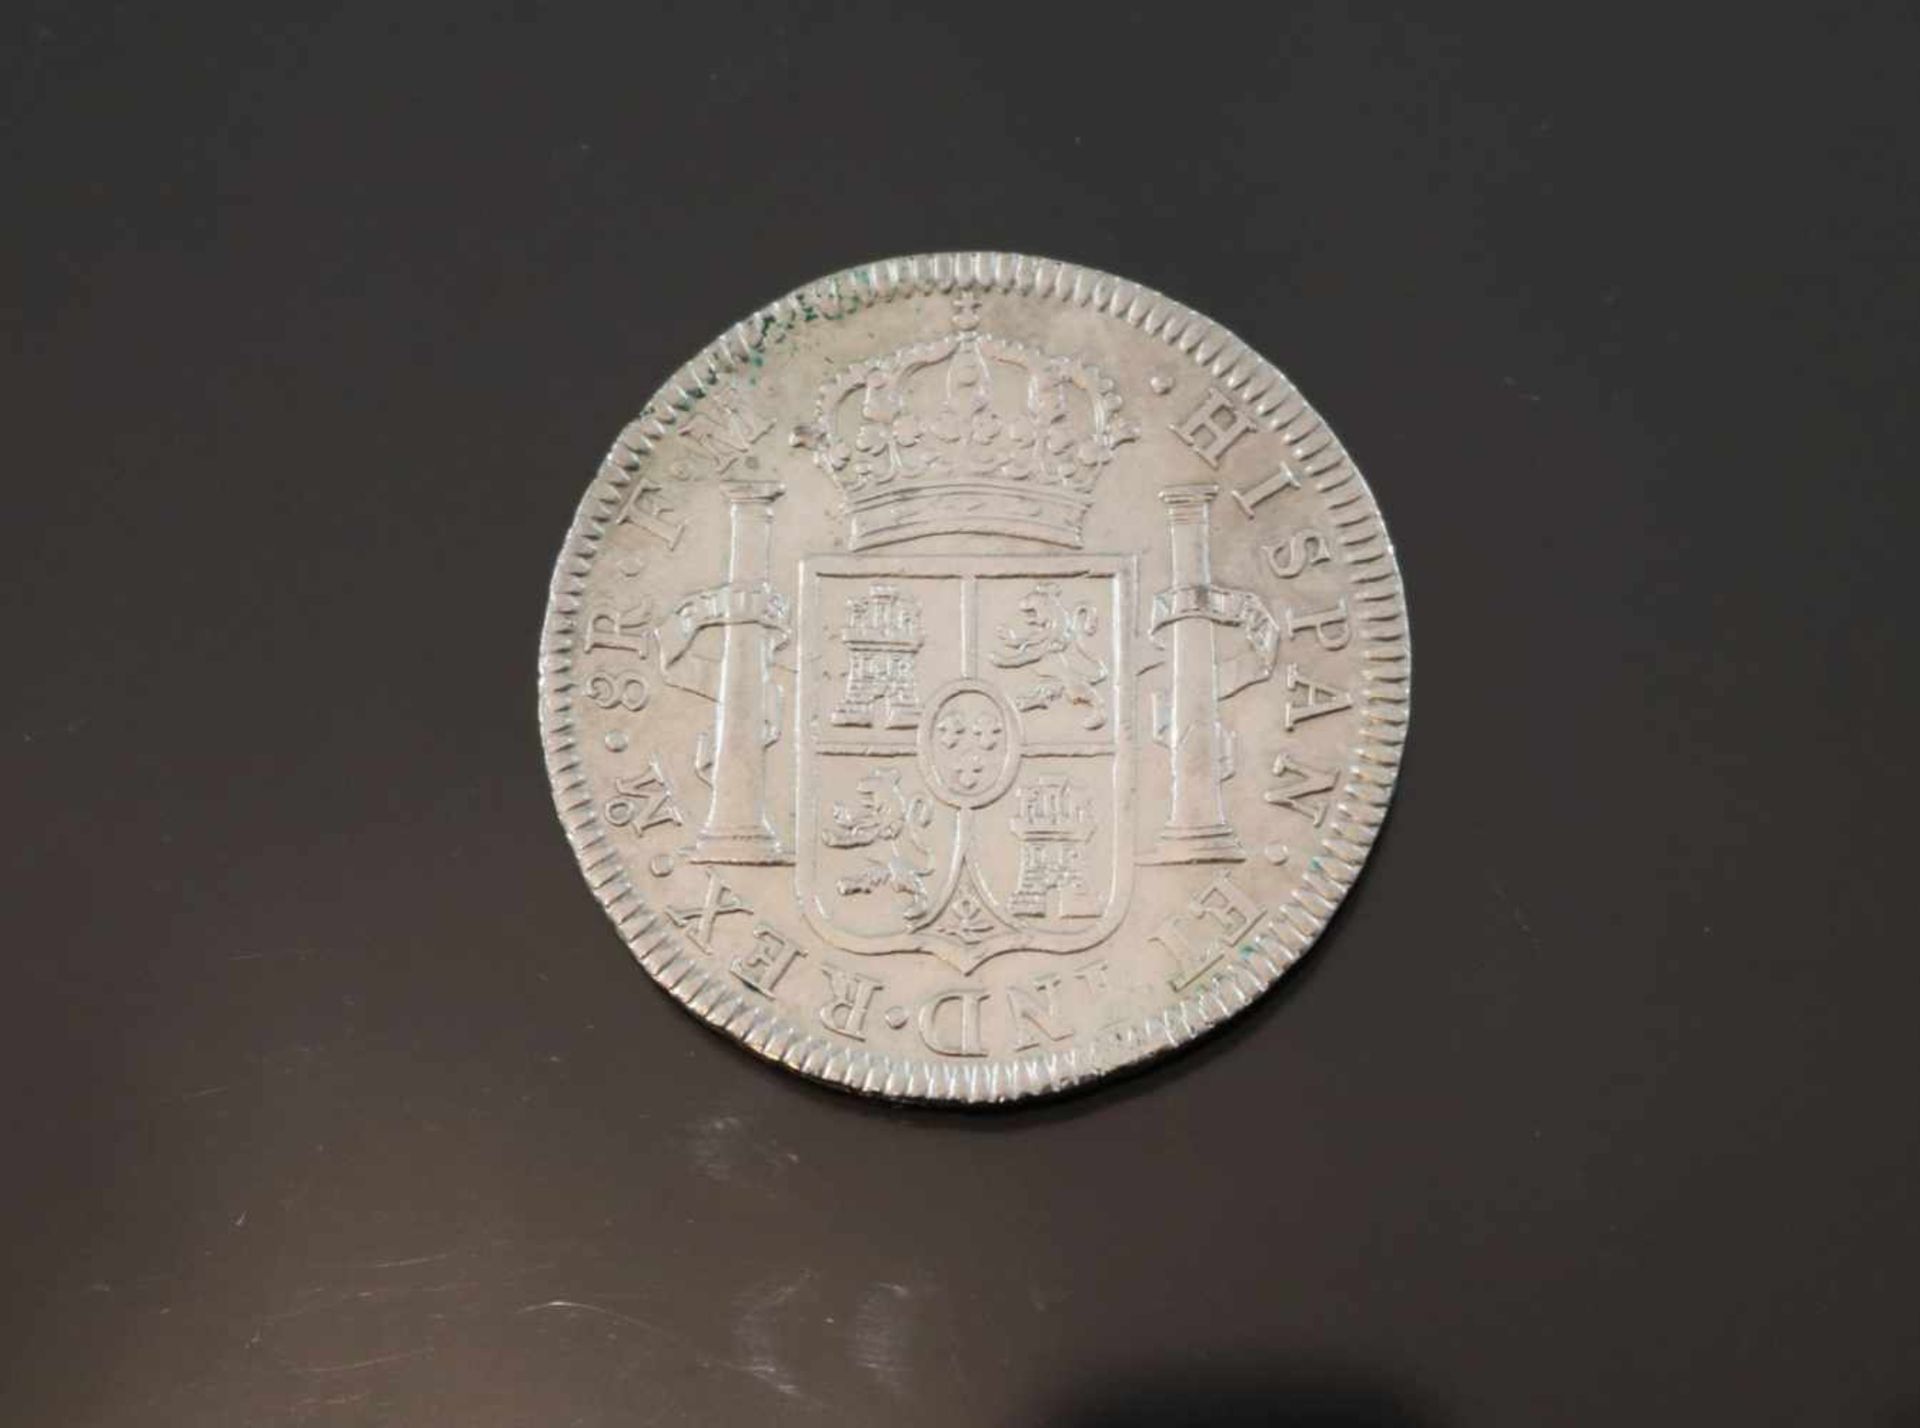 8 Reales 1795 Mexico Charles IIIIGewicht: 26,8 Gramm Größe: 39,66 mm Zustand: f-fz- - -25.00 %